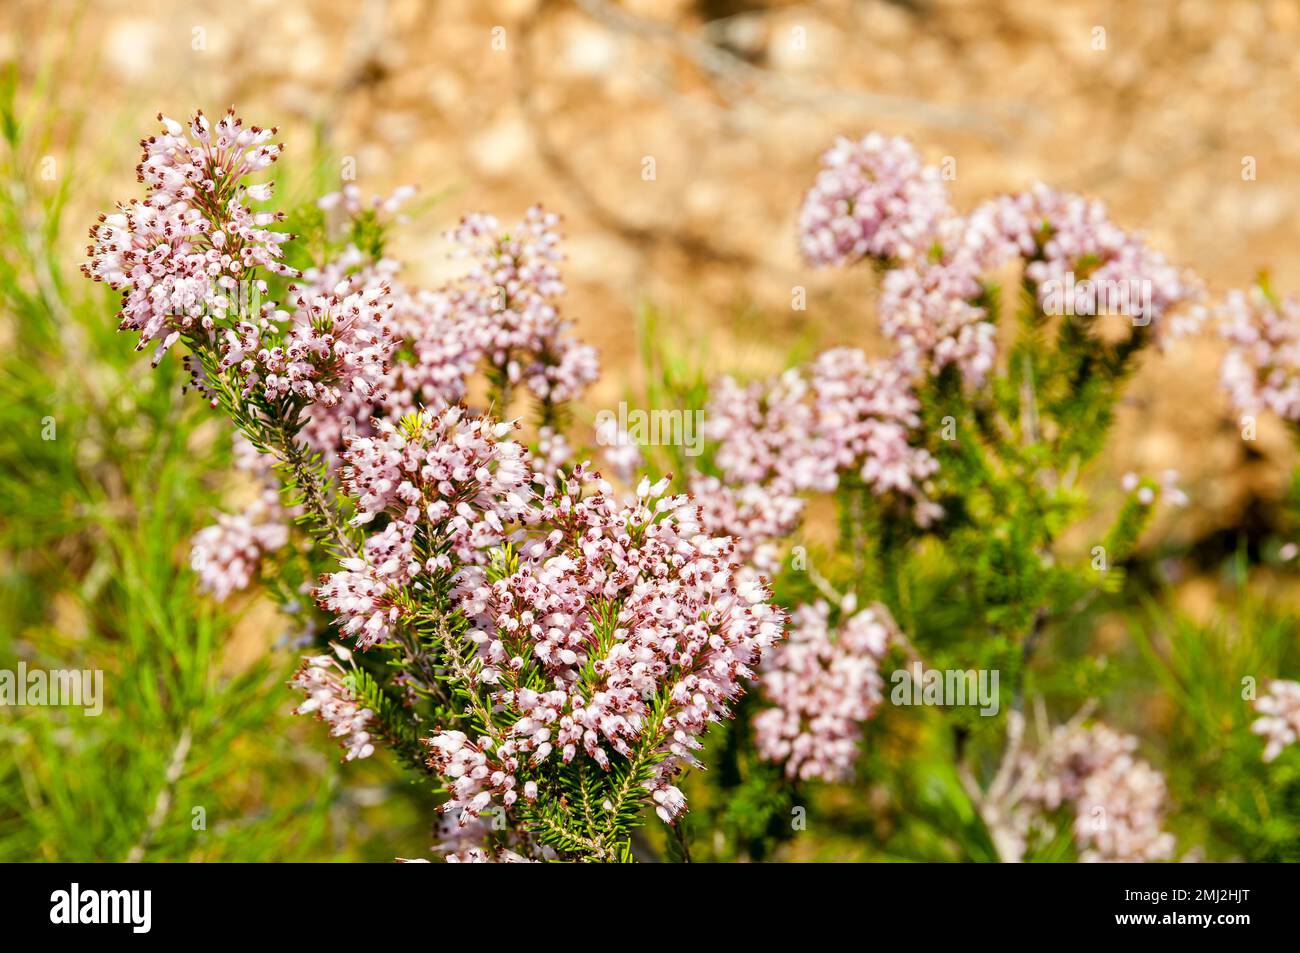 Mediterranean Heather, Erica multiflora, in its natural habitat. Tarragona, Catalonia, Spain Stock Photo